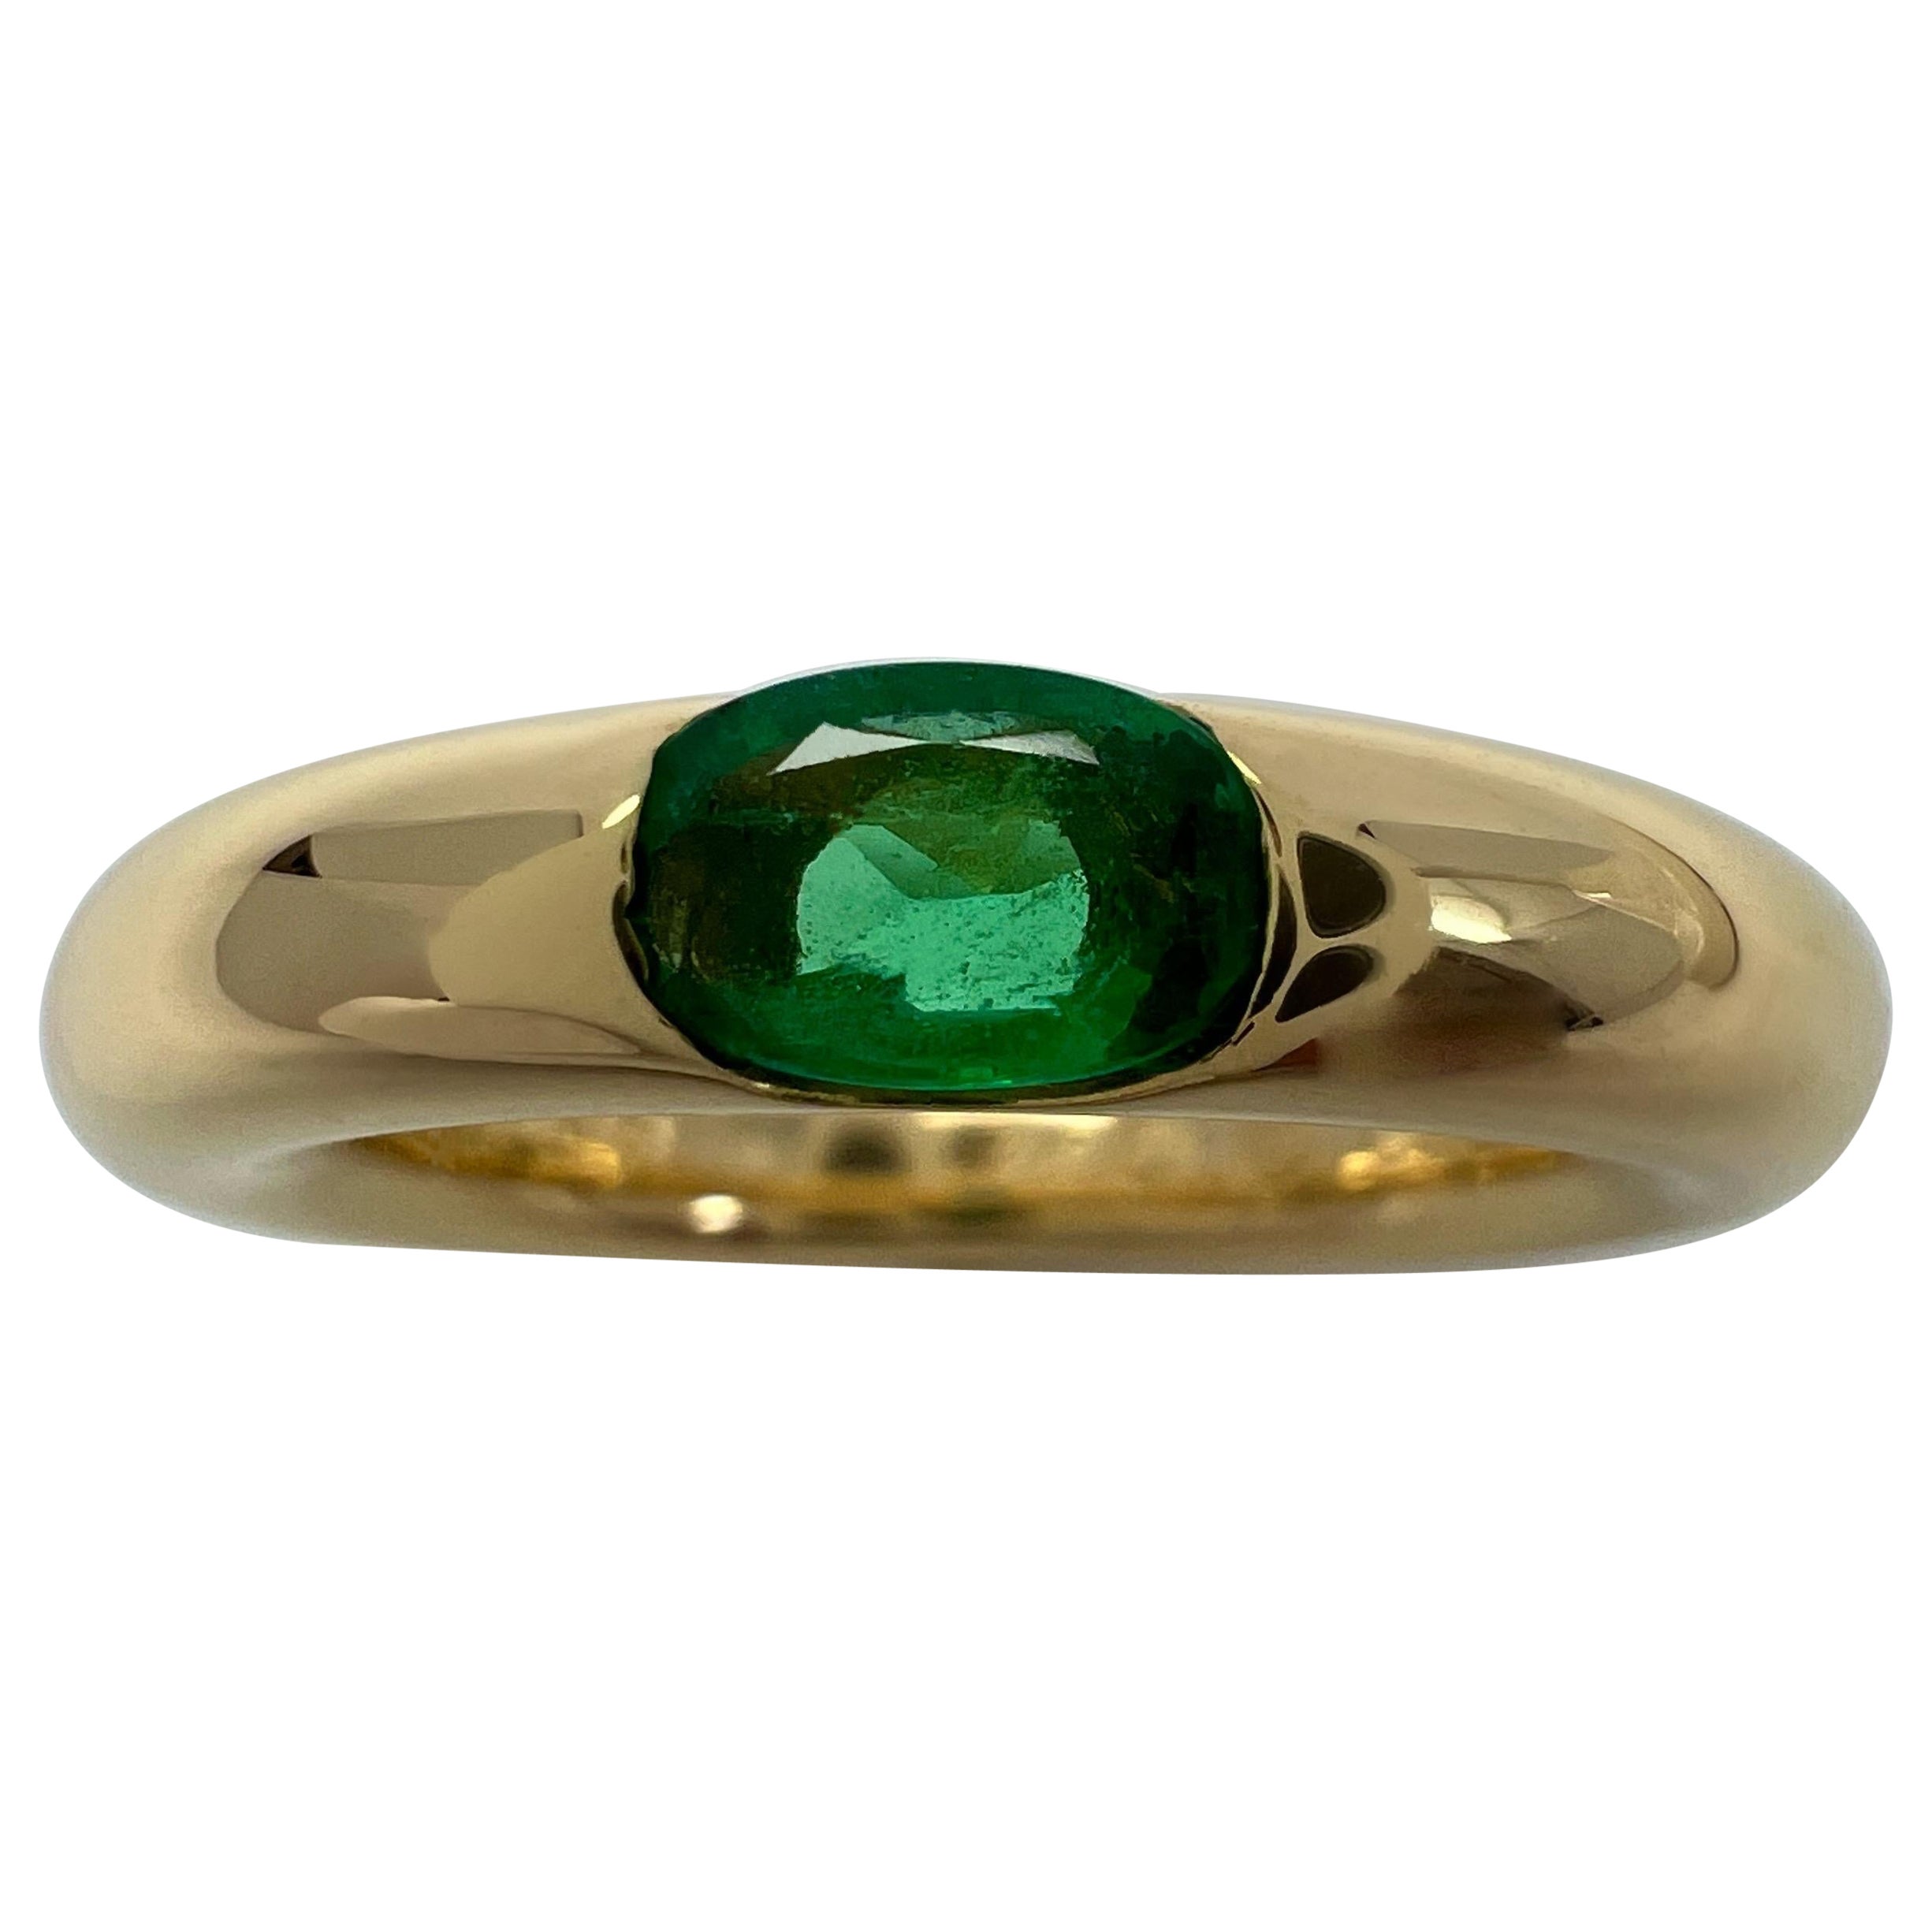 Vintage Cartier Smaragd Vivid Grün Ellipse 18k Gelbgold Solitär Ring 52